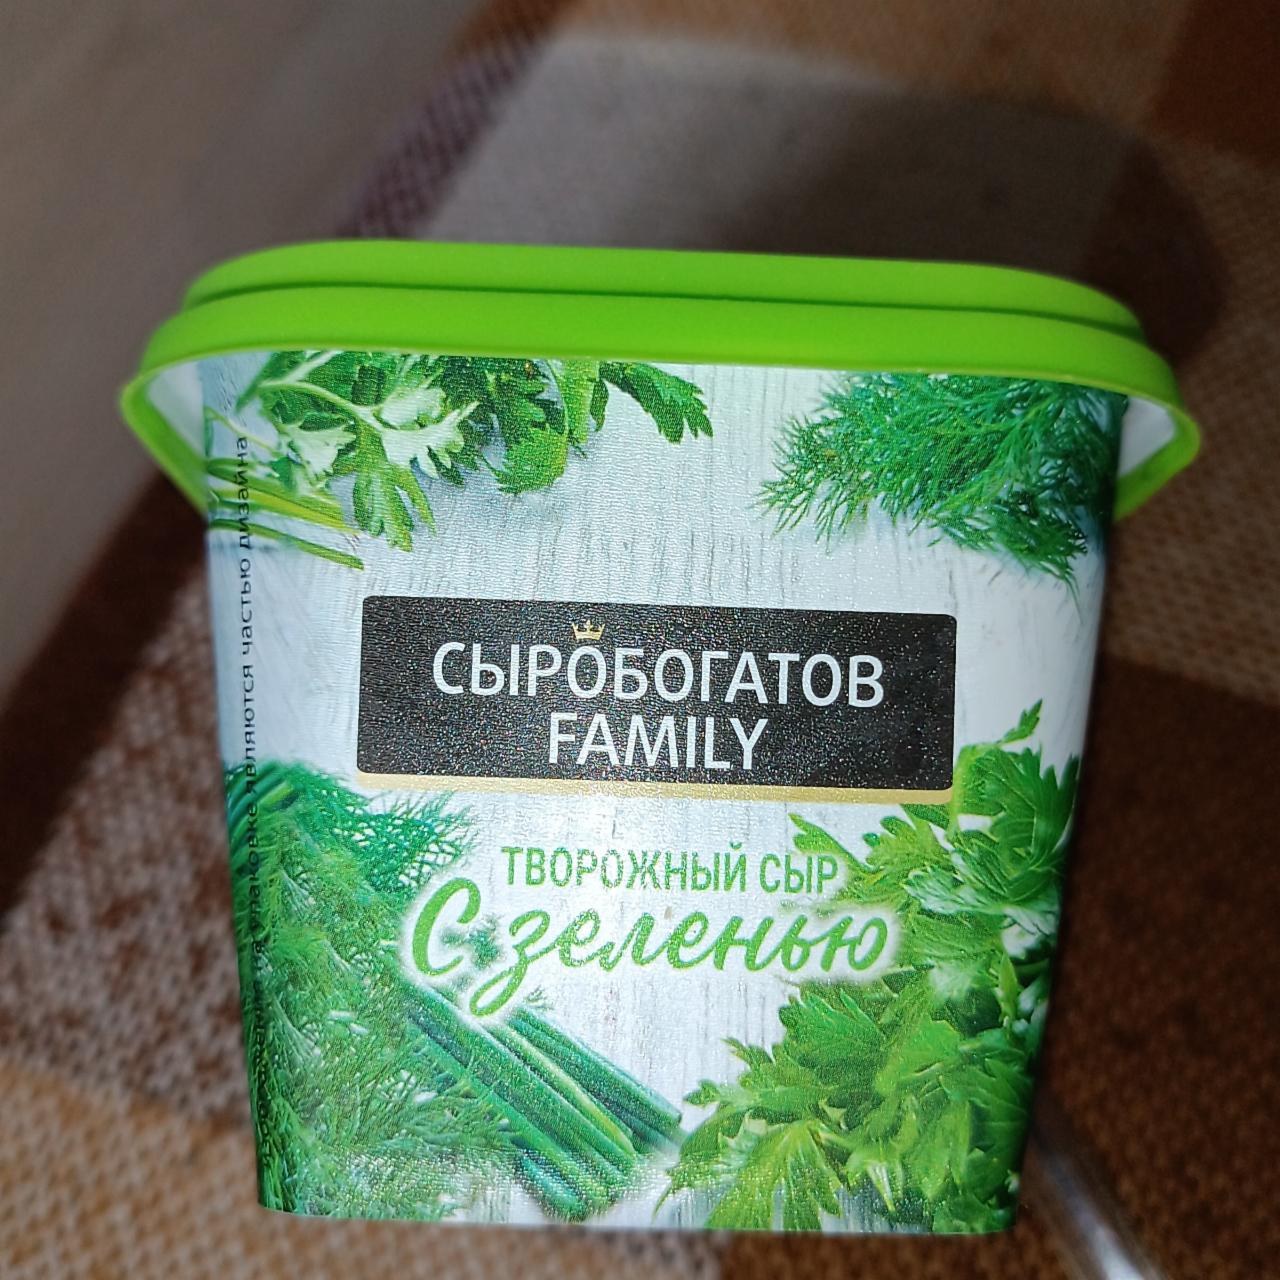 Фото - Творожный сыр с зеленью Сыробогатов family